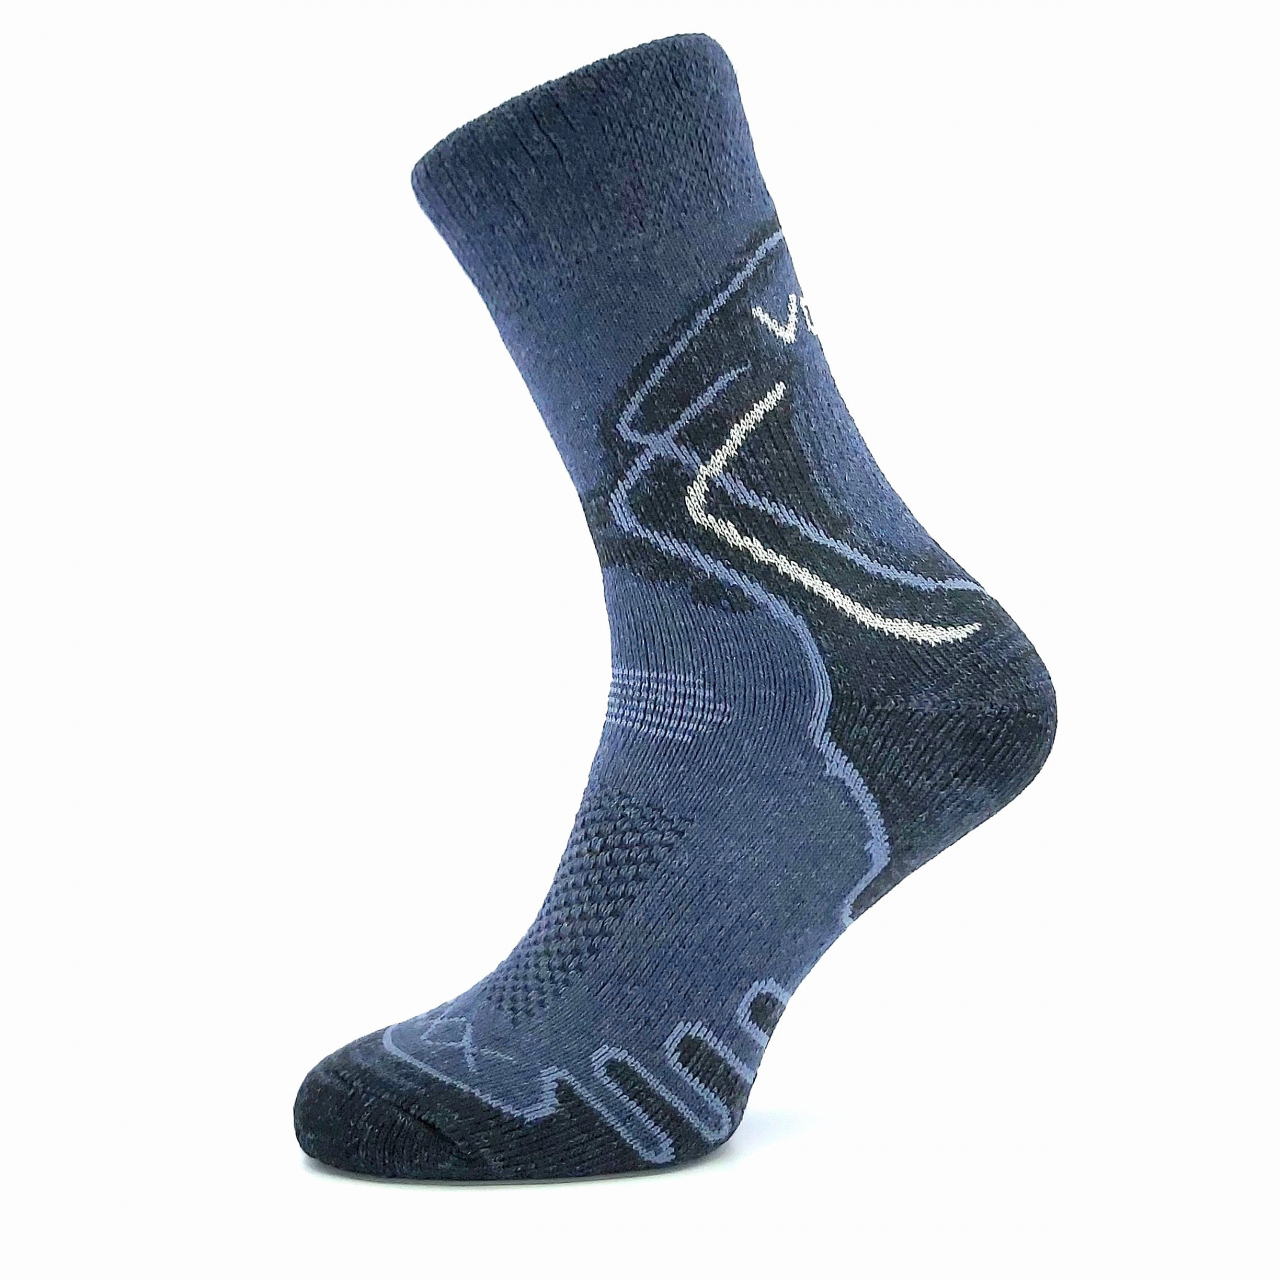 Ponožky trekingové unisex Voxx Limit III - tmavě modré, 39-42